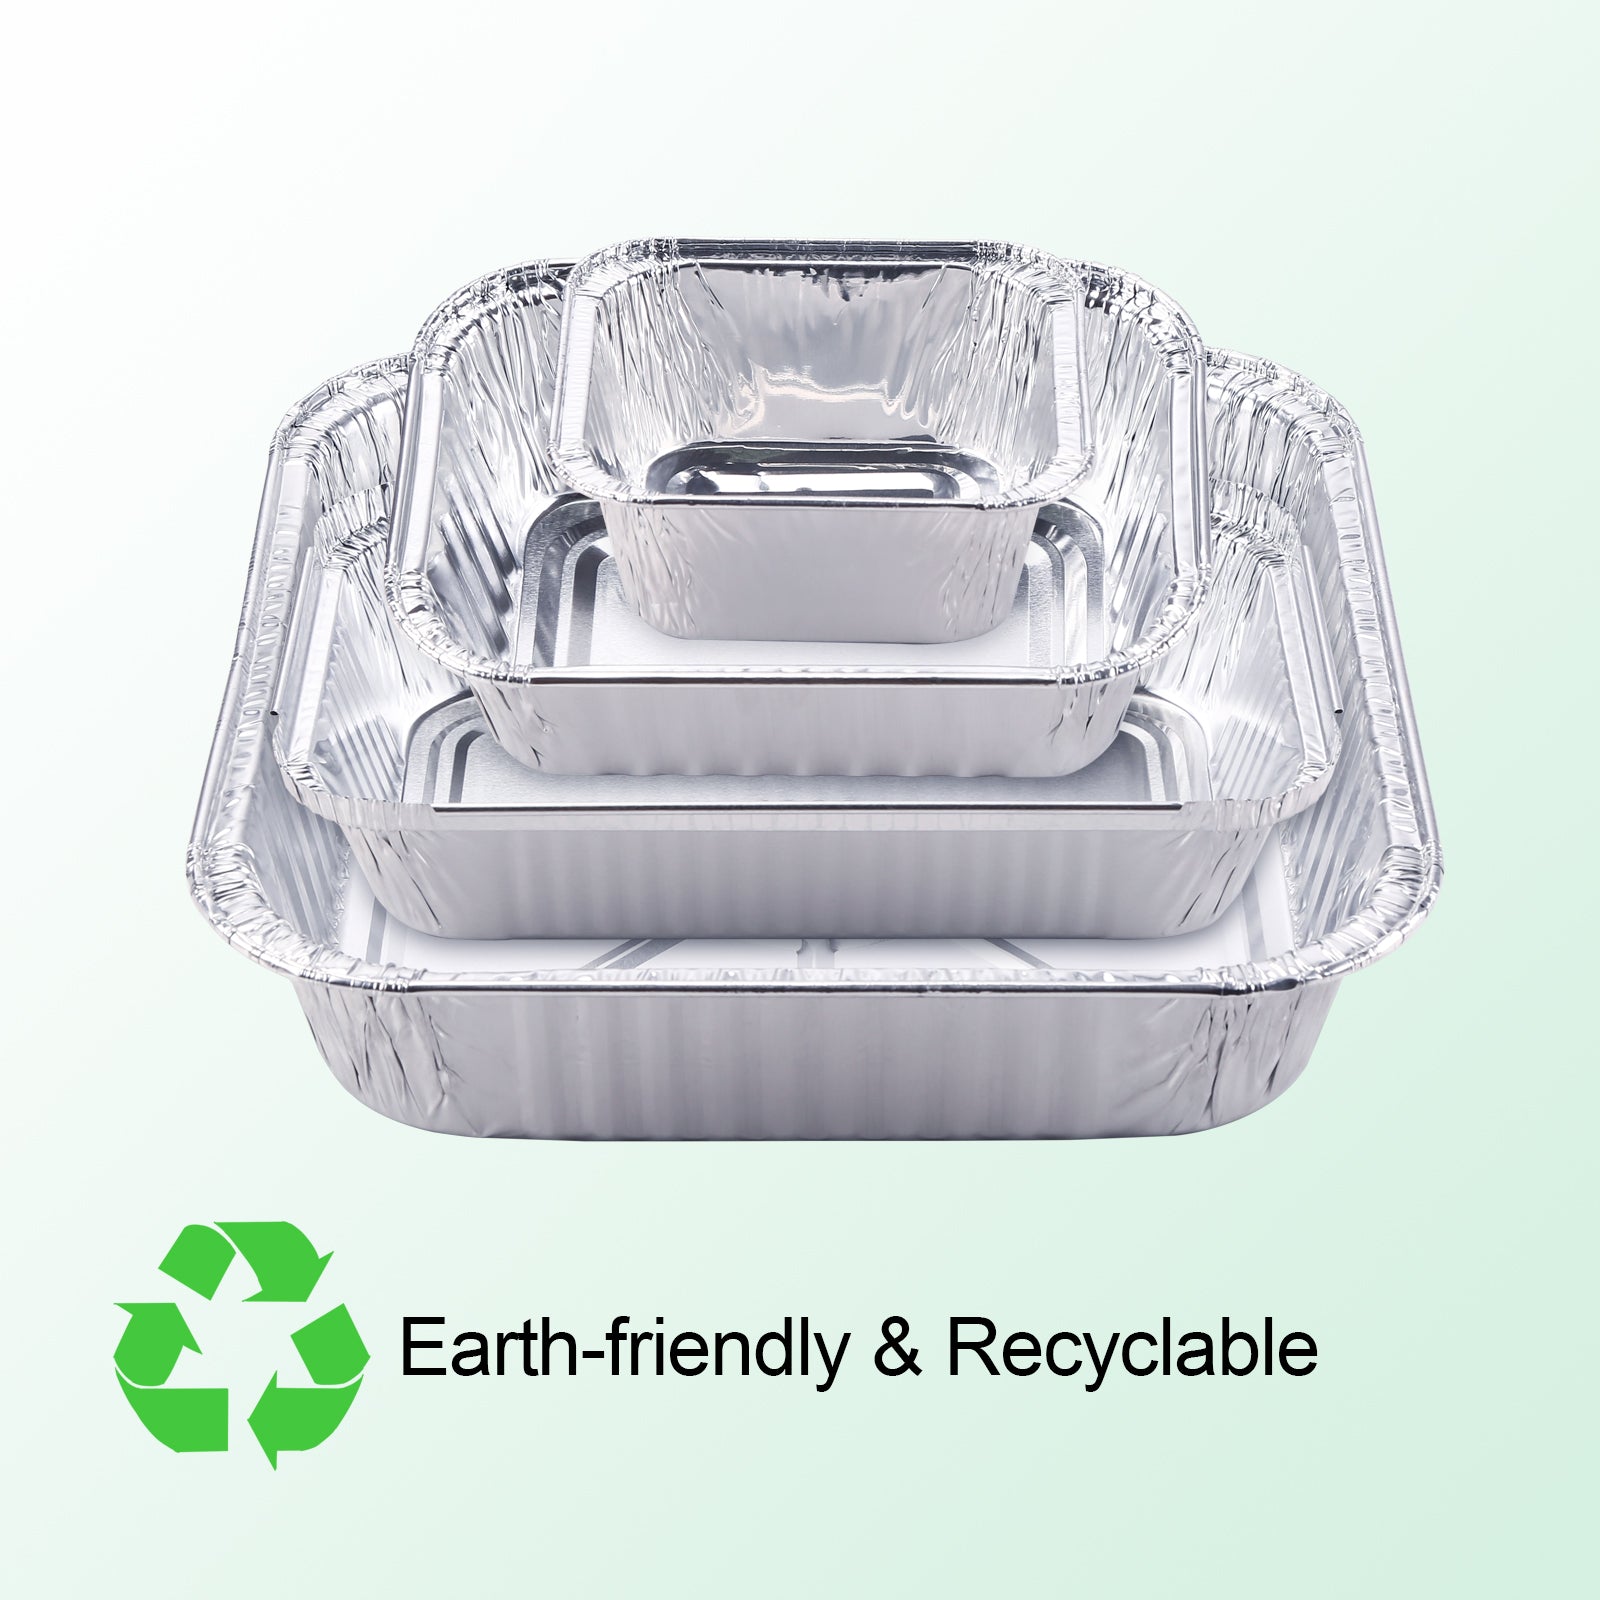 Aluminum Pans, Disposable Foil Steam Table Deep Pans, Tin Pans